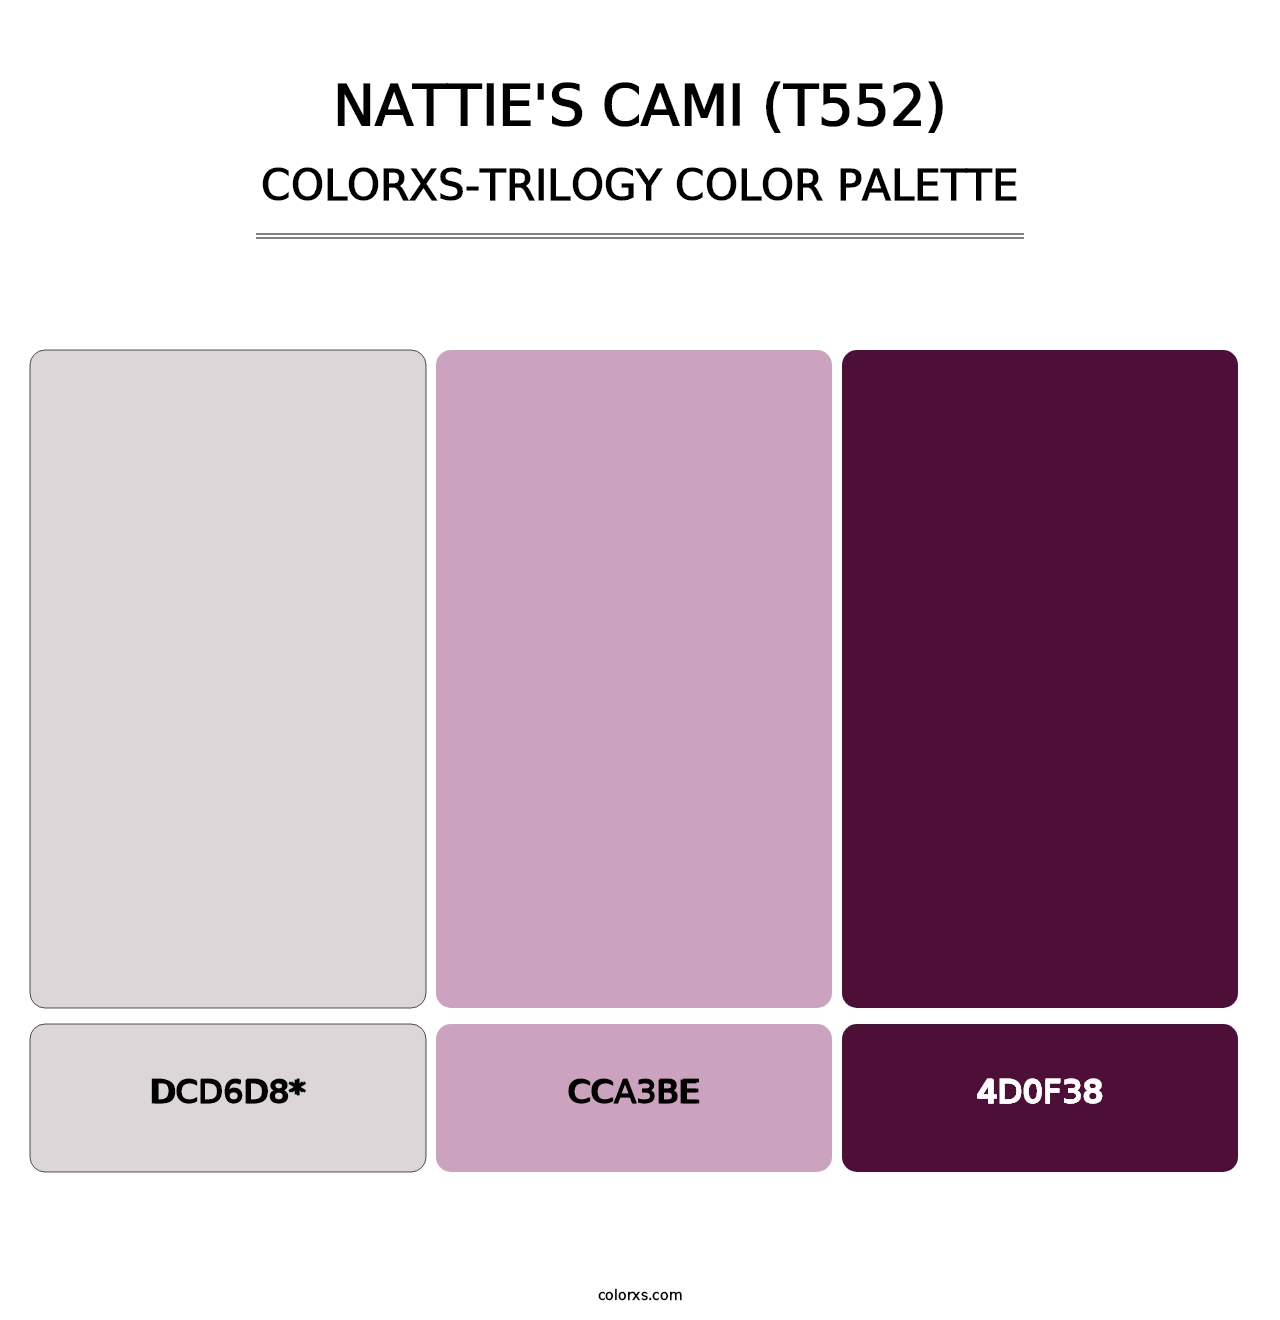 Nattie's Cami (T552) - Colorxs Trilogy Palette